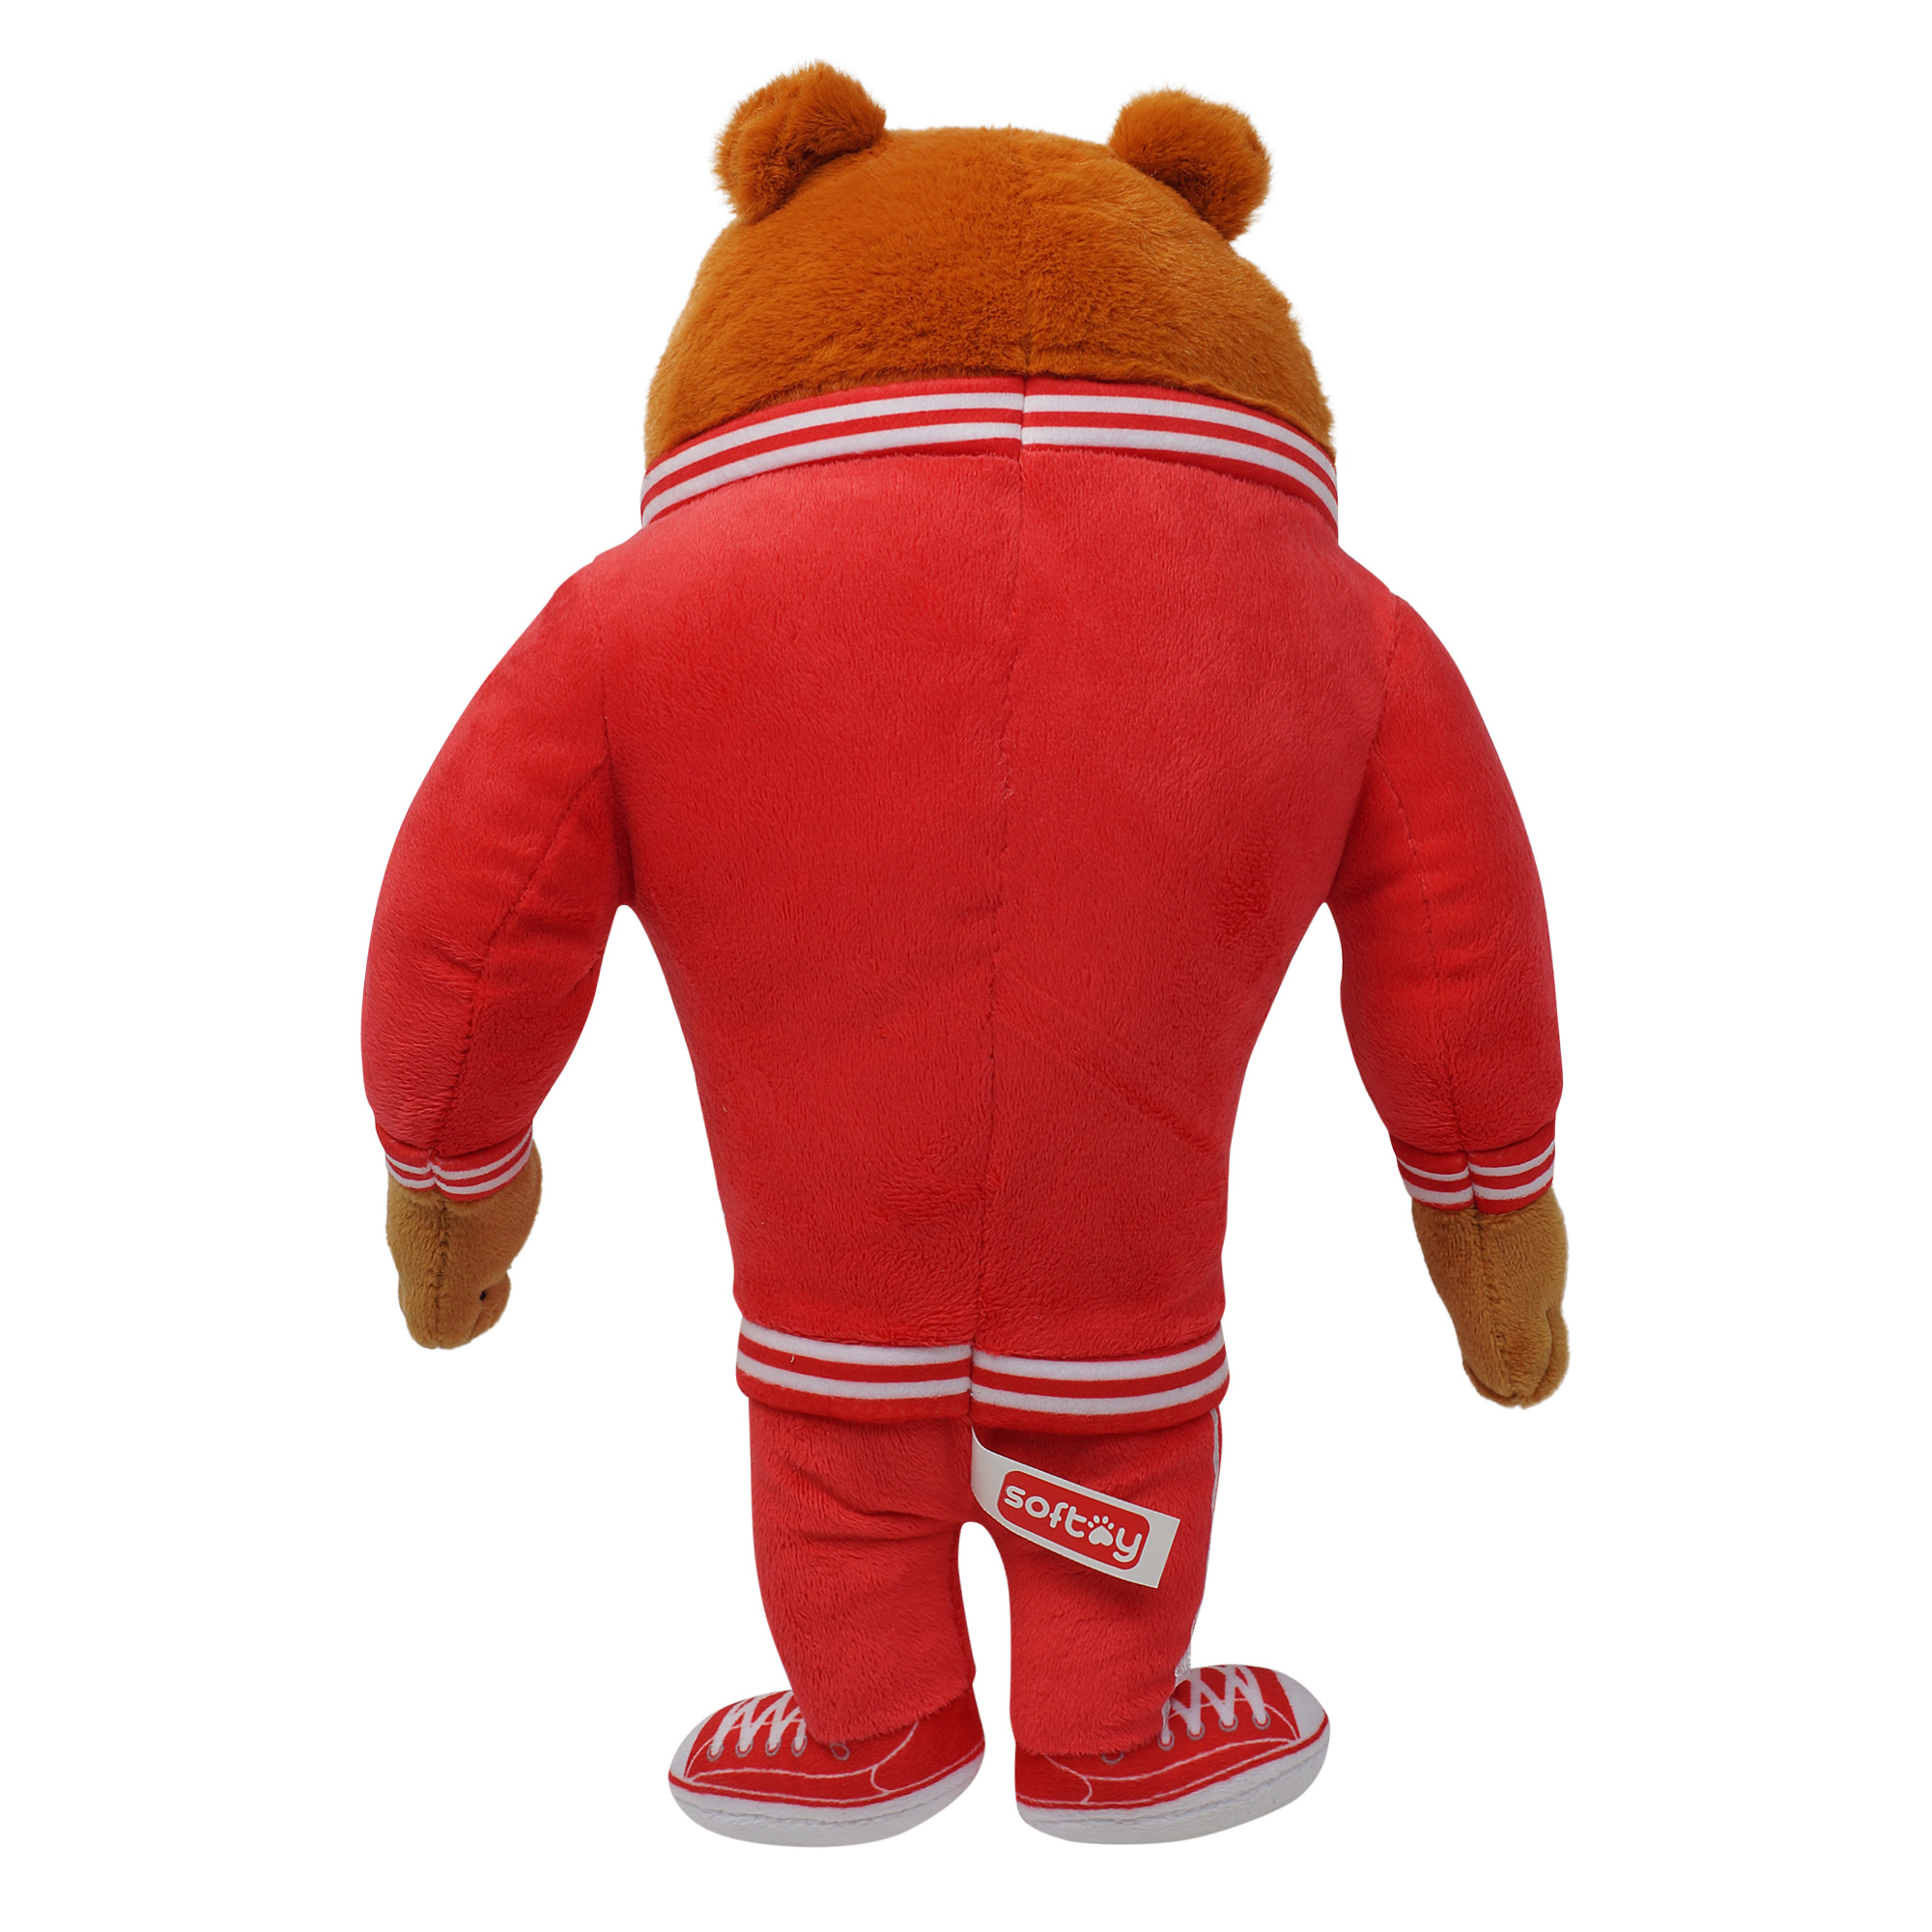 Softoy Игрушка мягкая Медведь спортсмен  32см